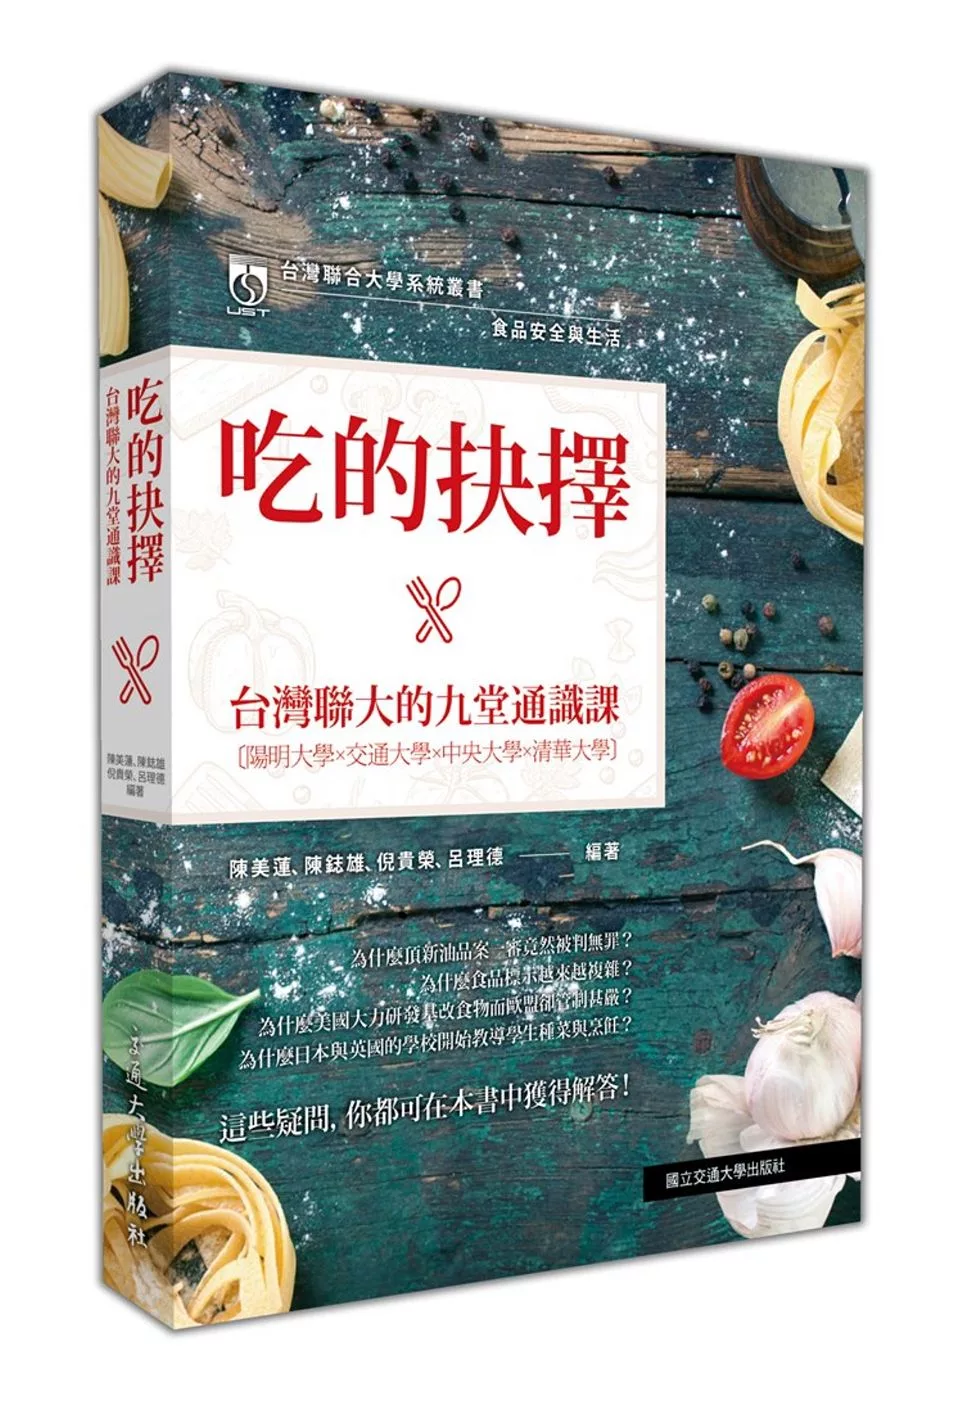 食品安全與生活：吃的抉擇‧台灣聯大的九堂通識課